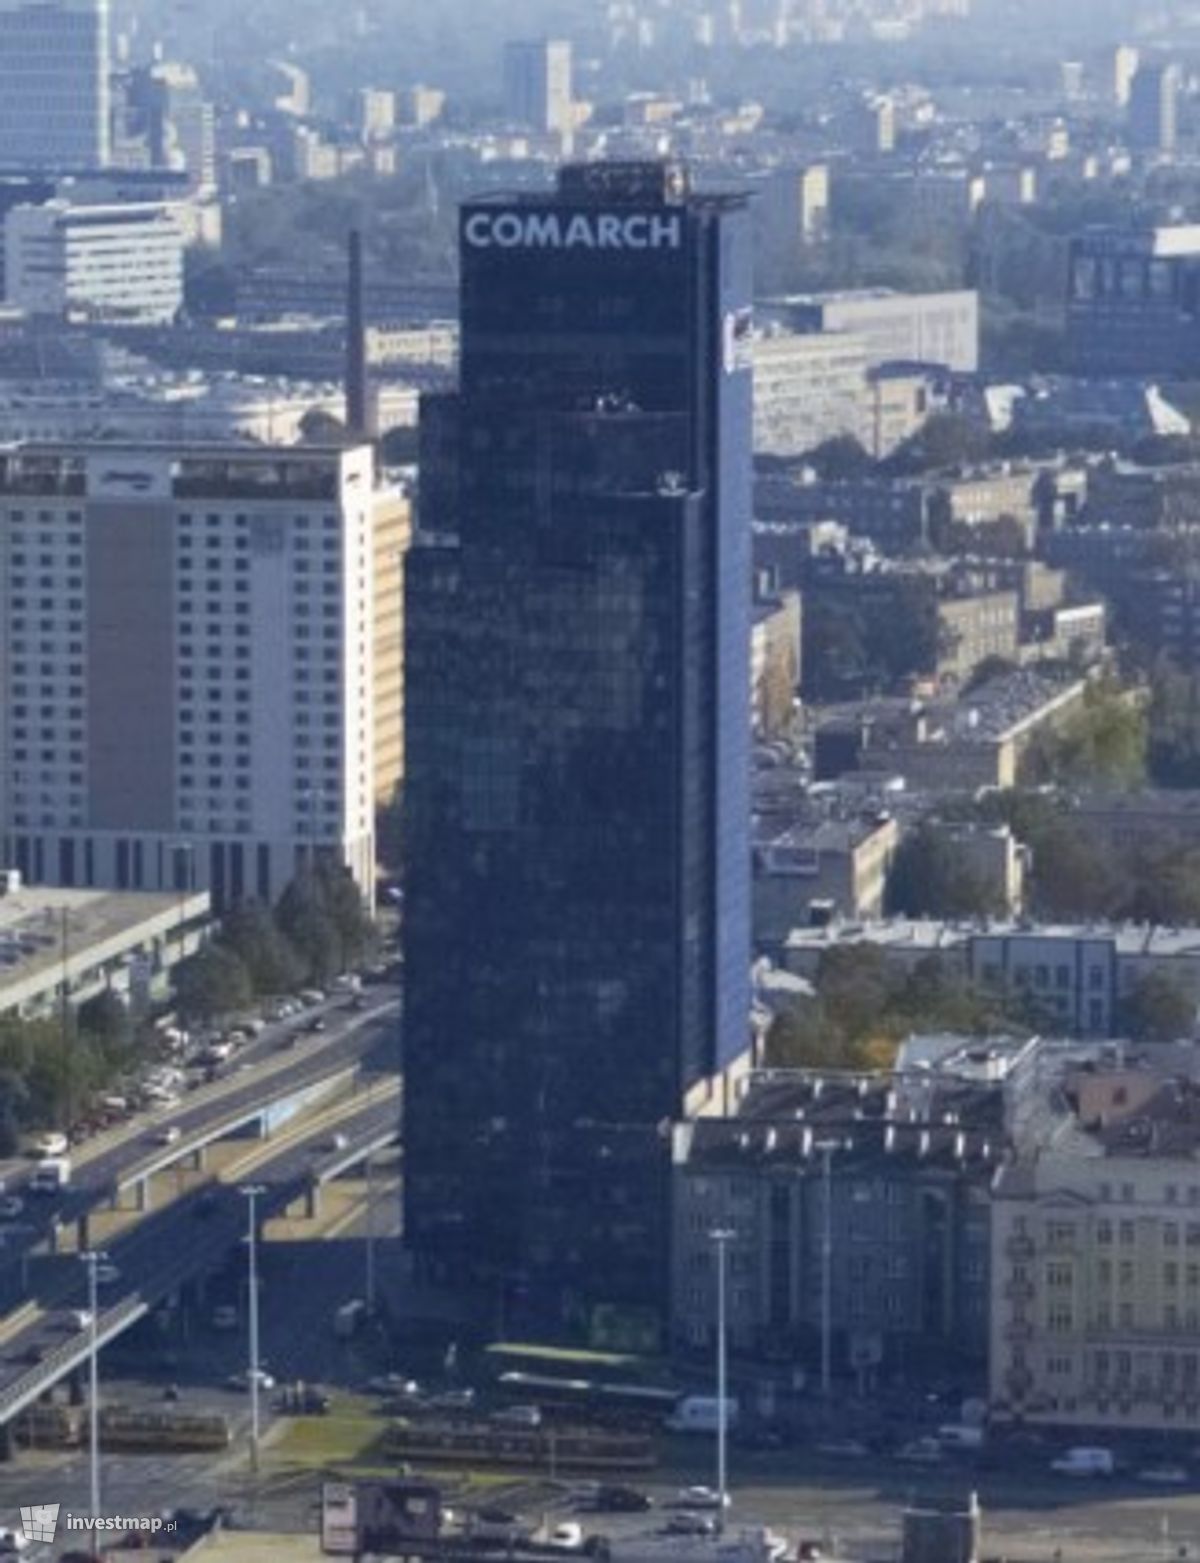 Zdjęcie Central Tower 